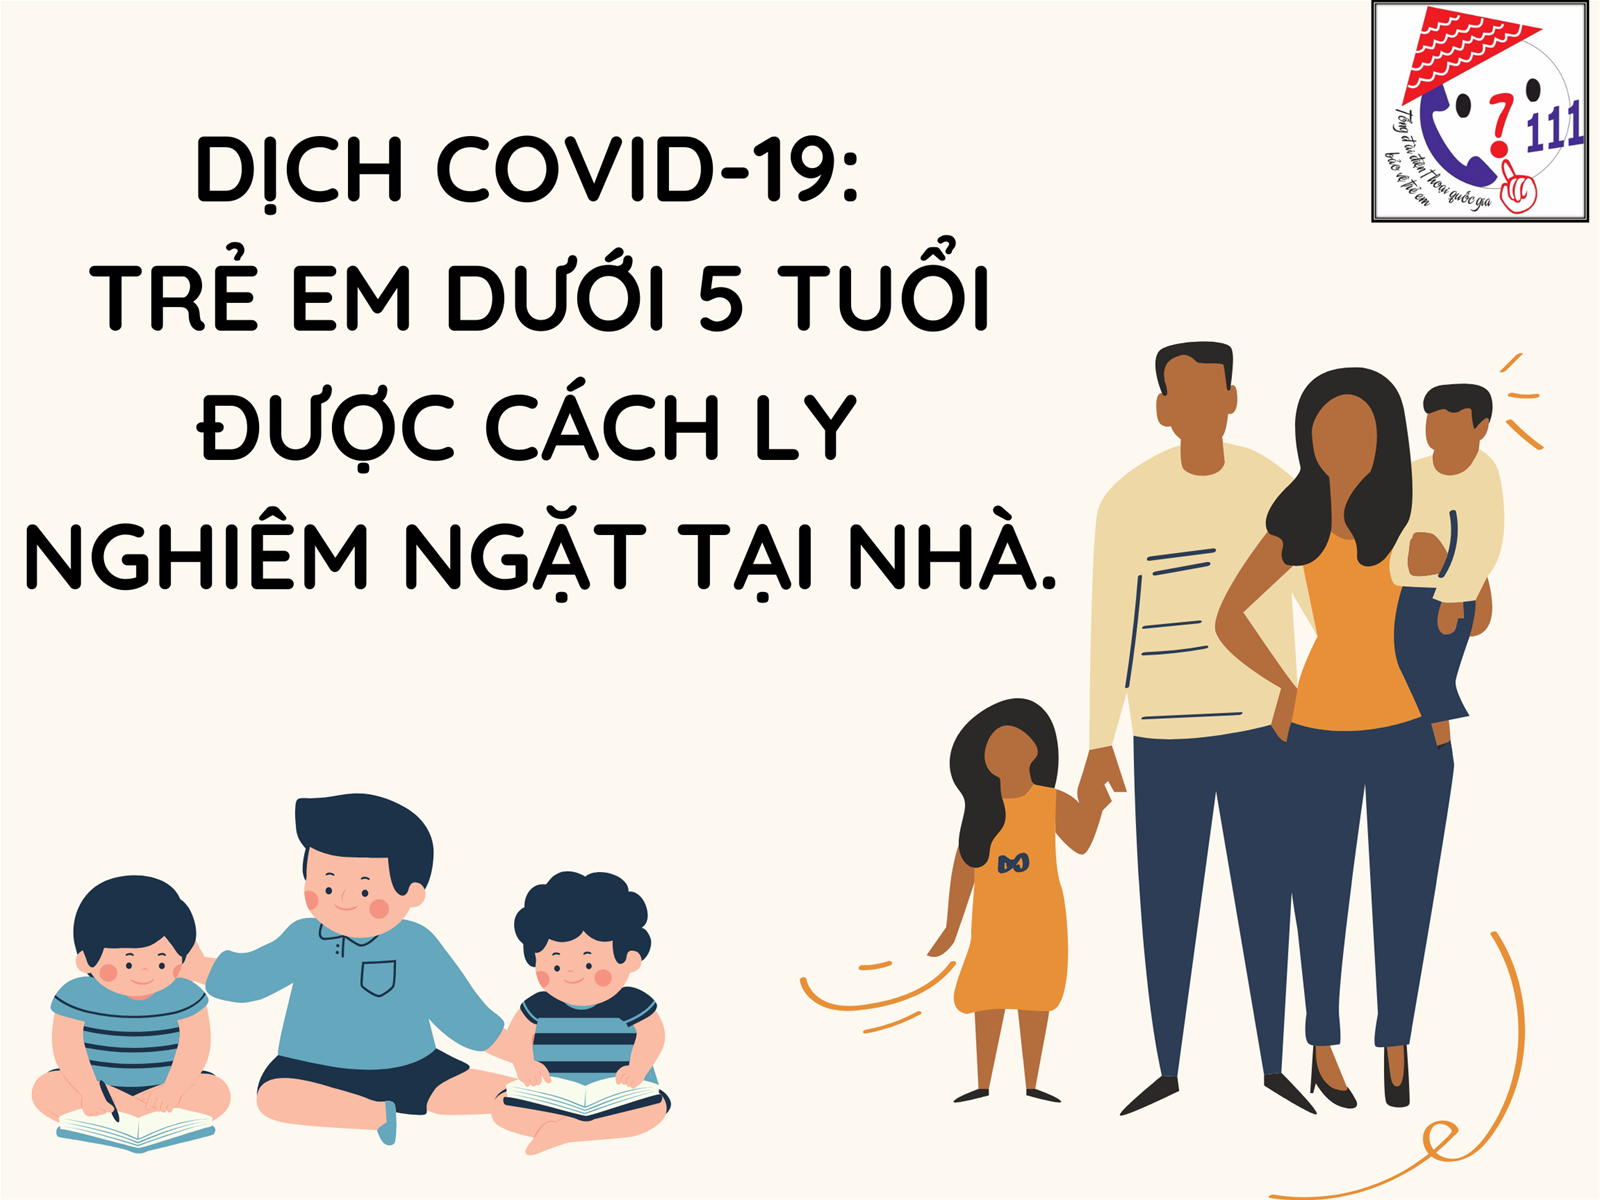 Dịch Covid-19: trẻ em dưới 5 tuổi được cách ly nghiêm ngặt tại nhà.